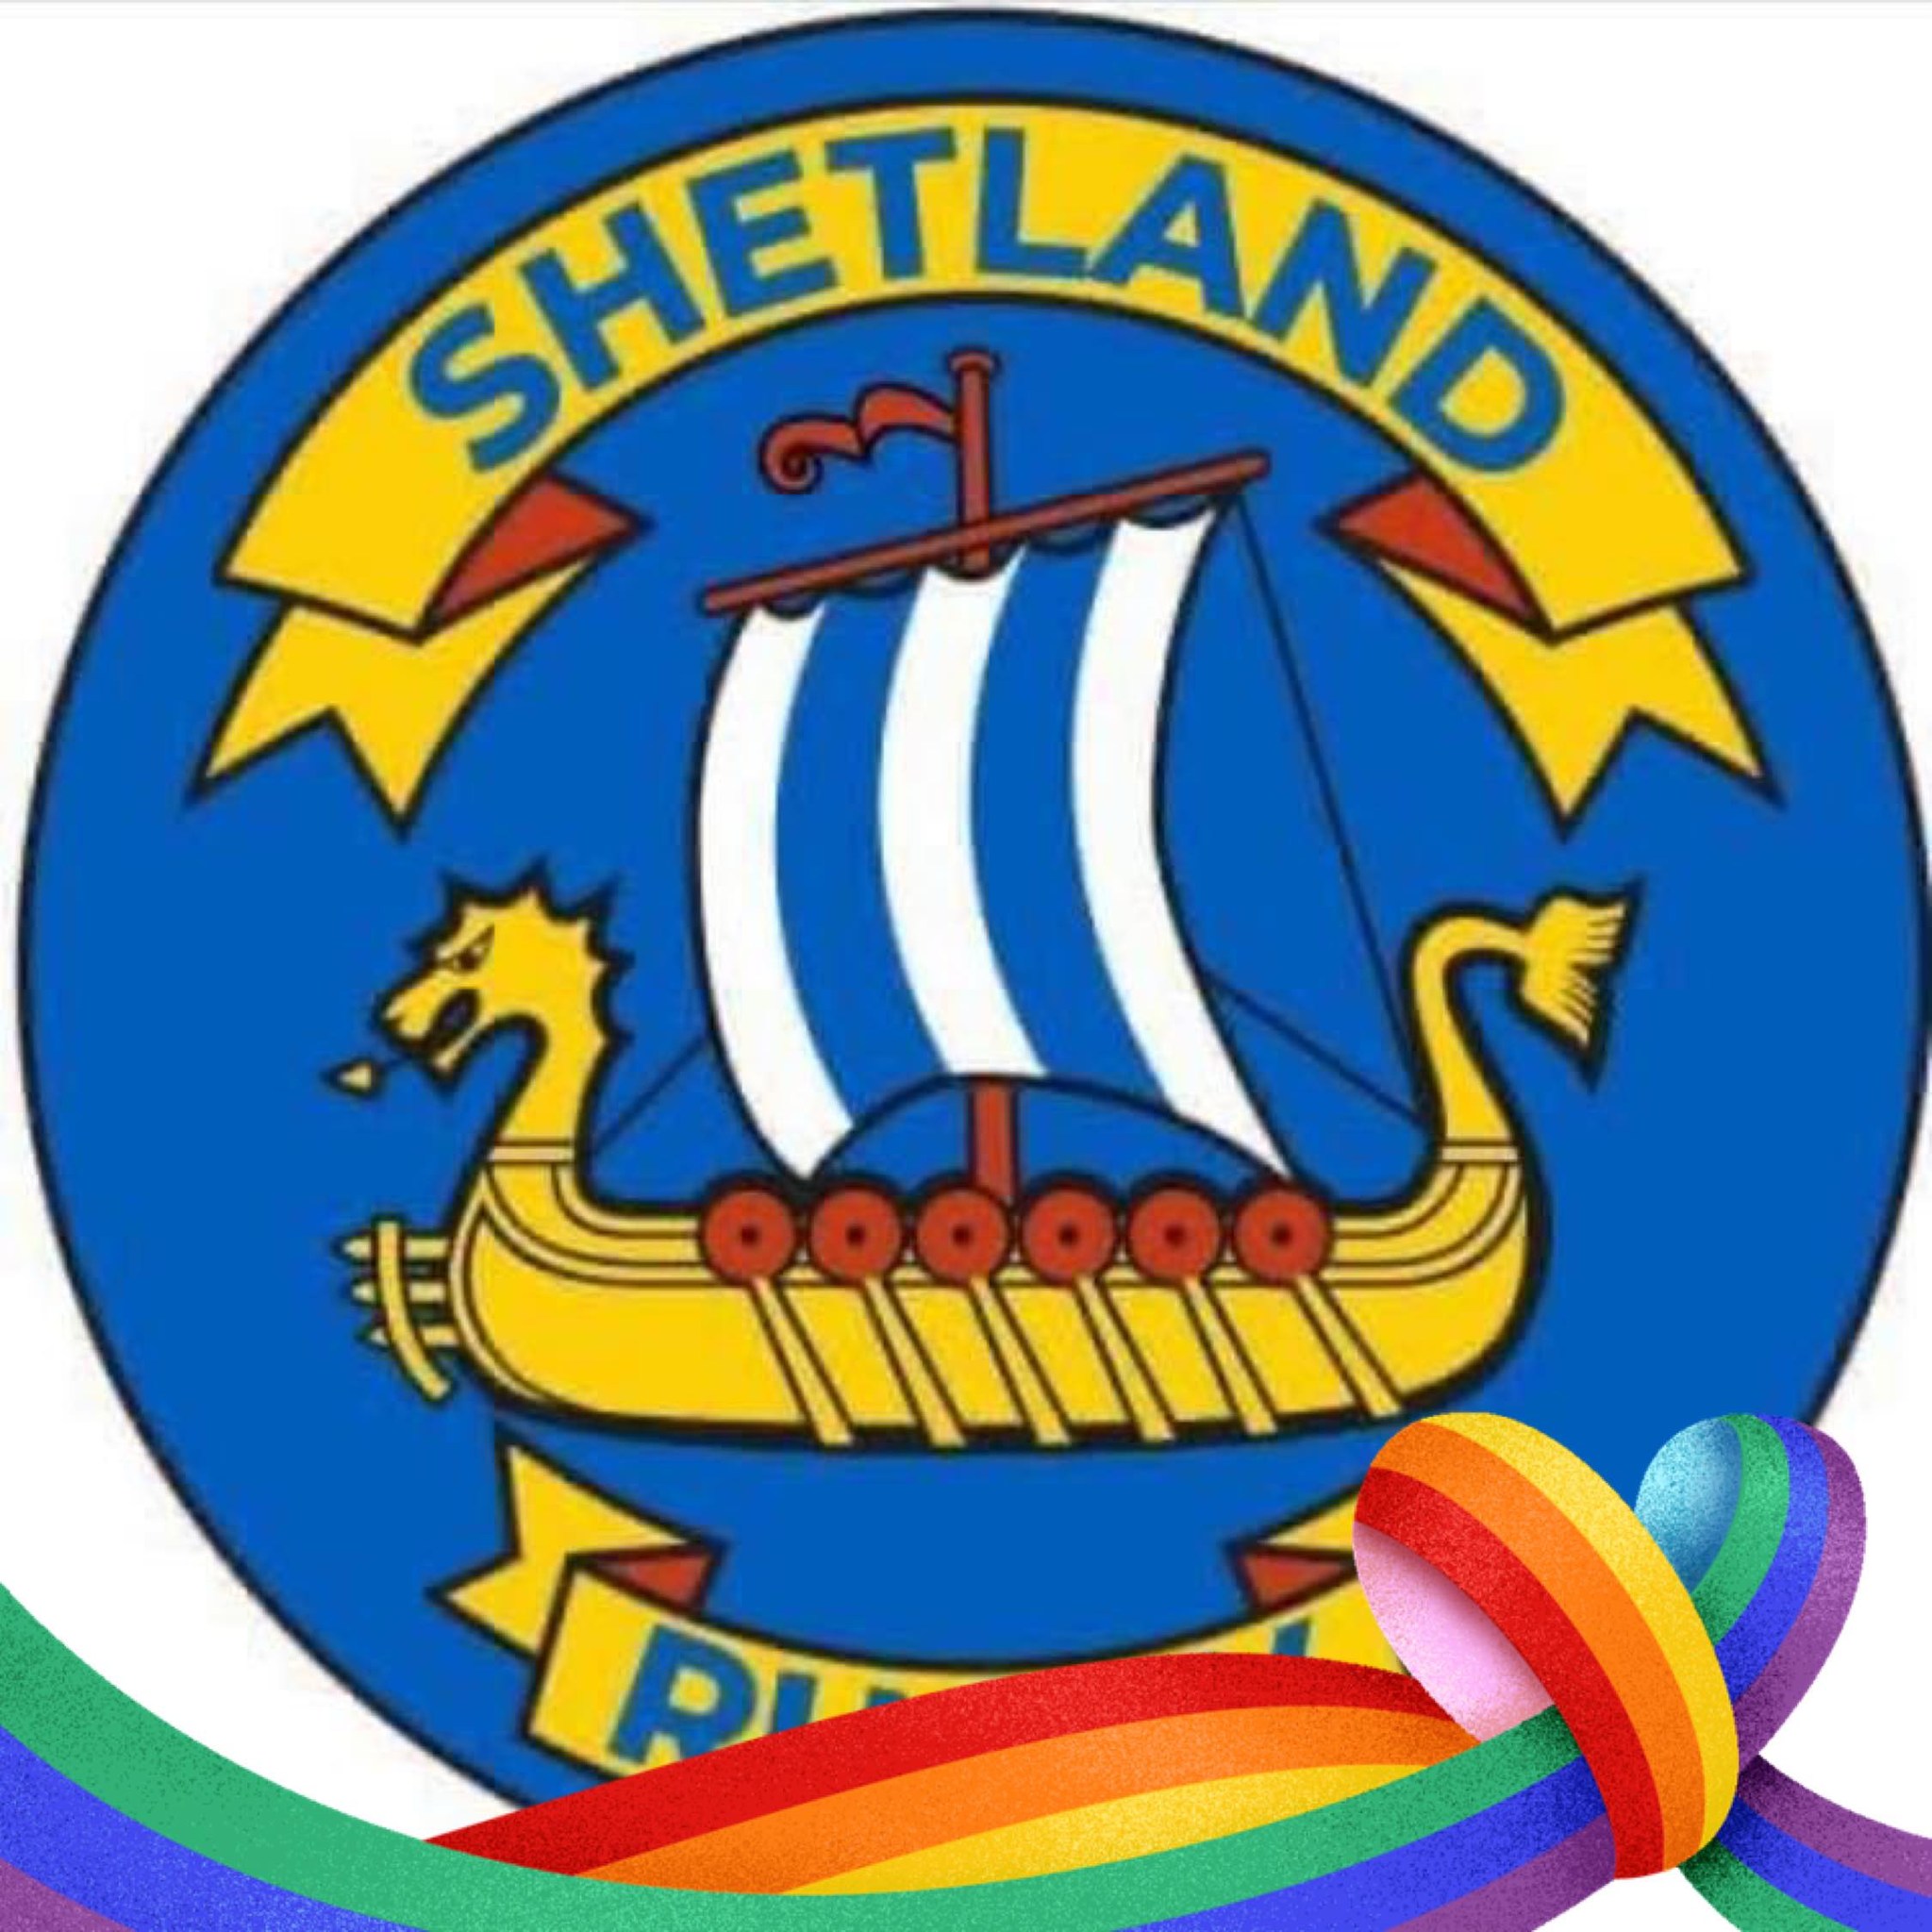 Shetland Rugby Football Club Logo